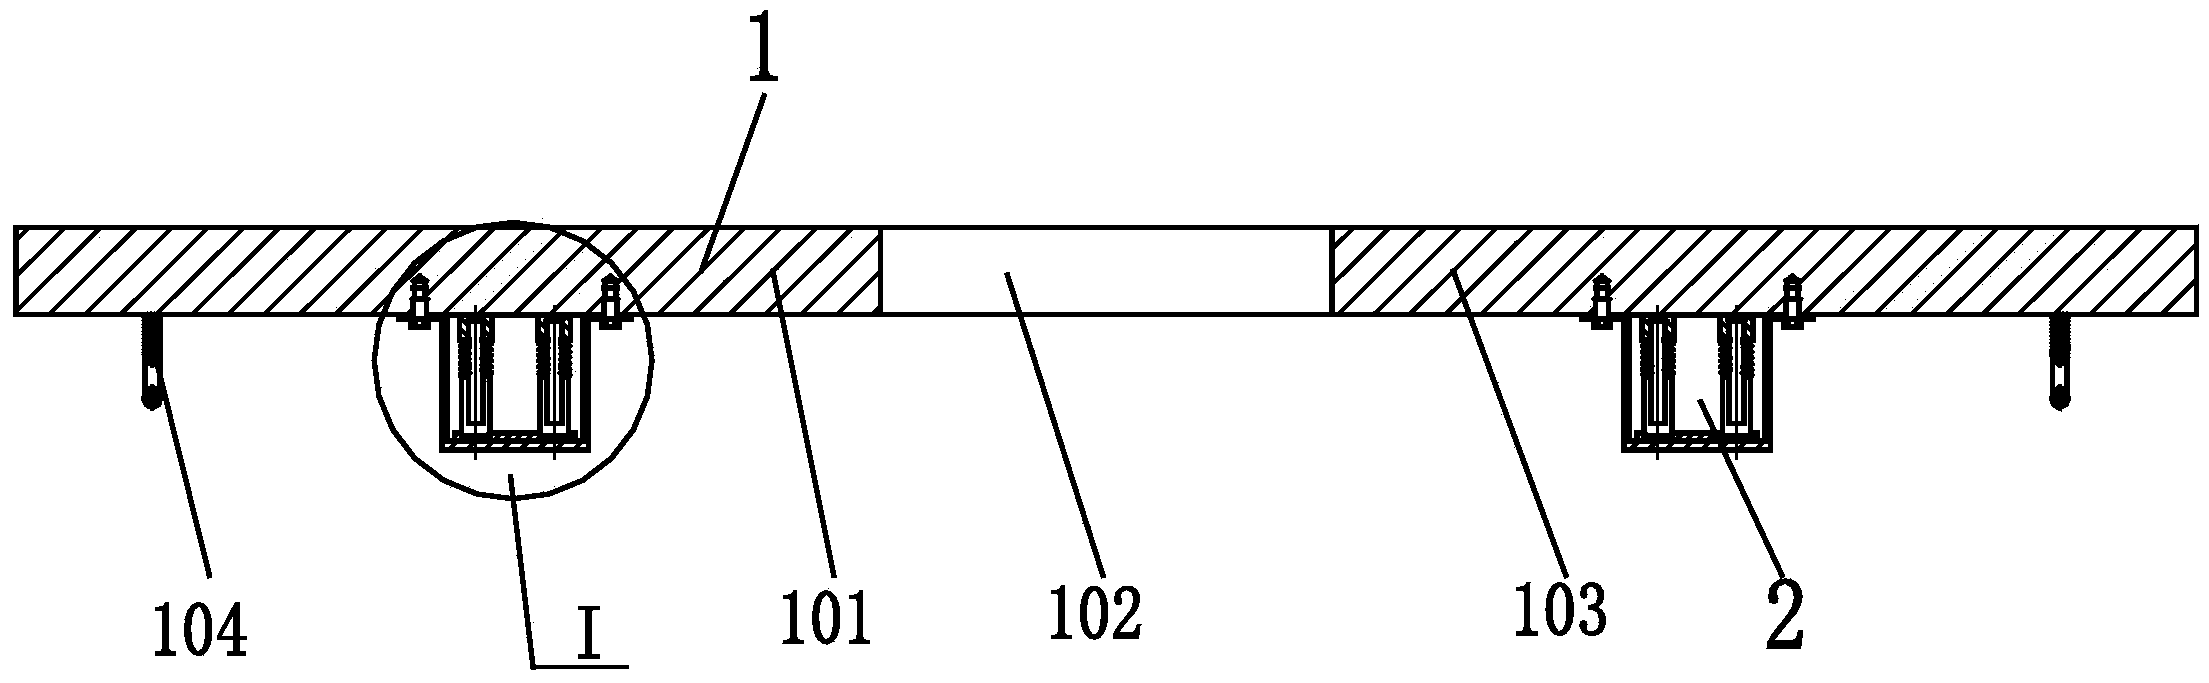 Shoulder pole unit for shouldering system